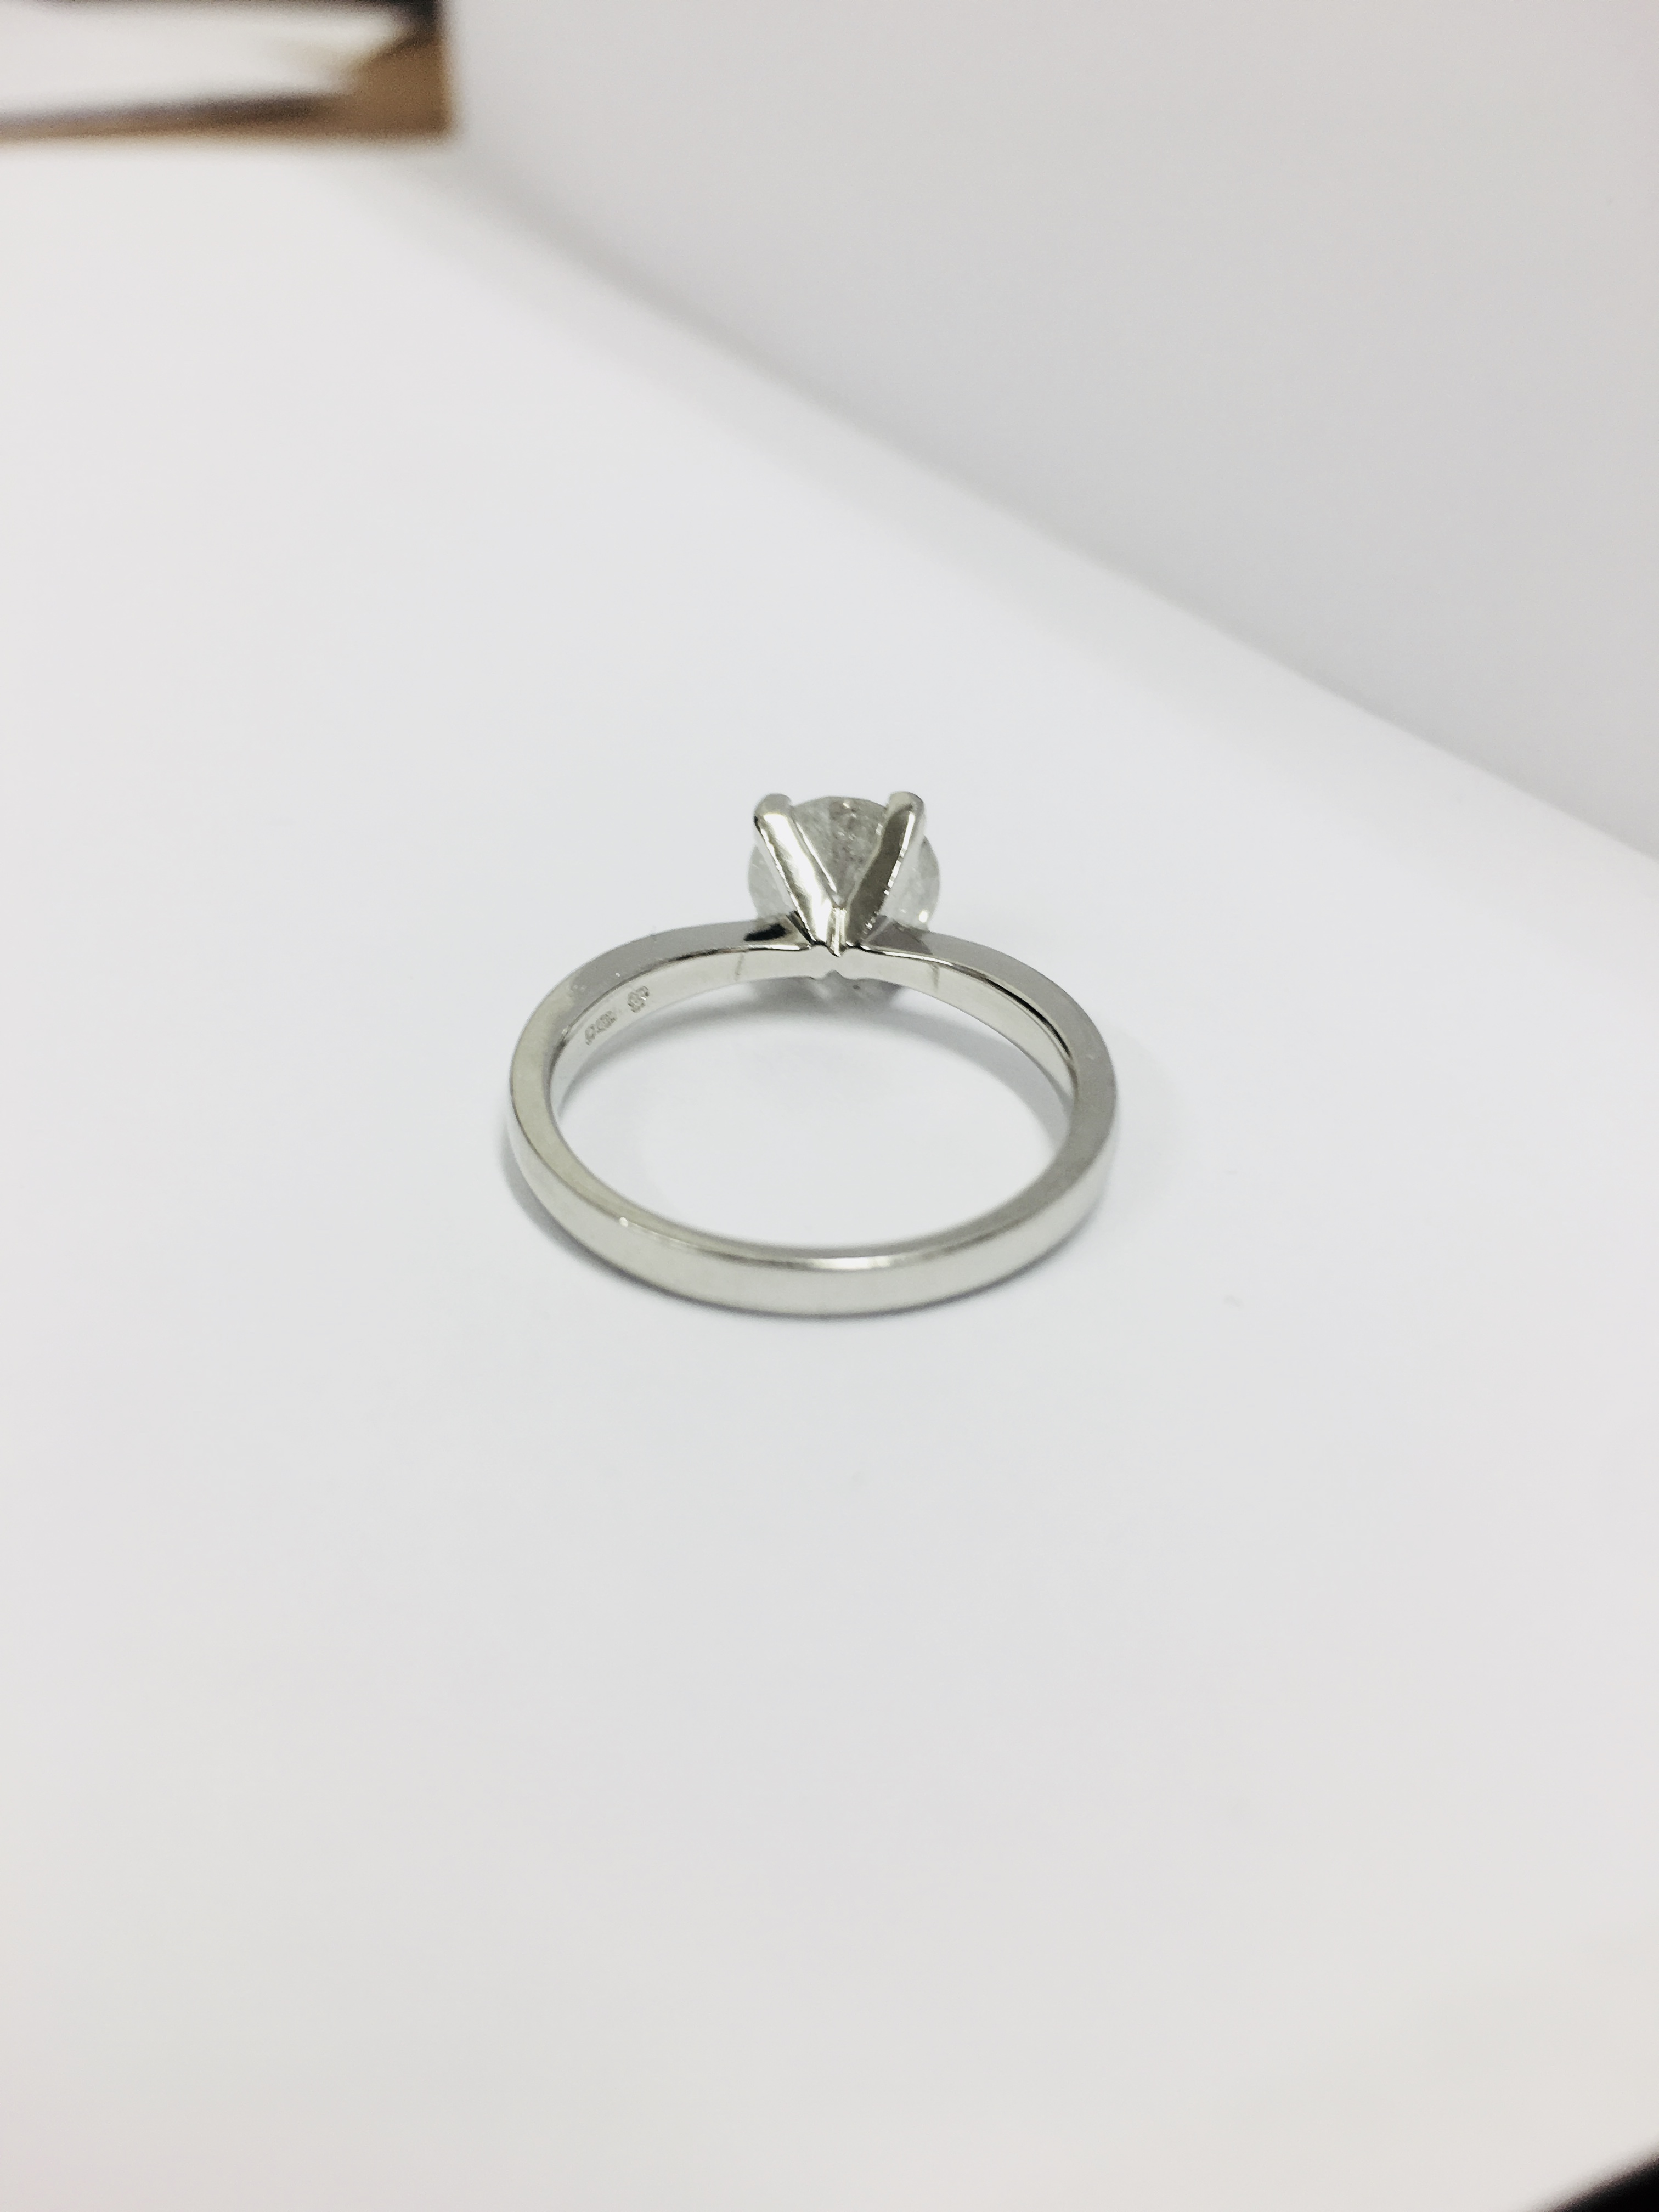 2.08ct diamond solitaire ring set in platinum - Image 5 of 6